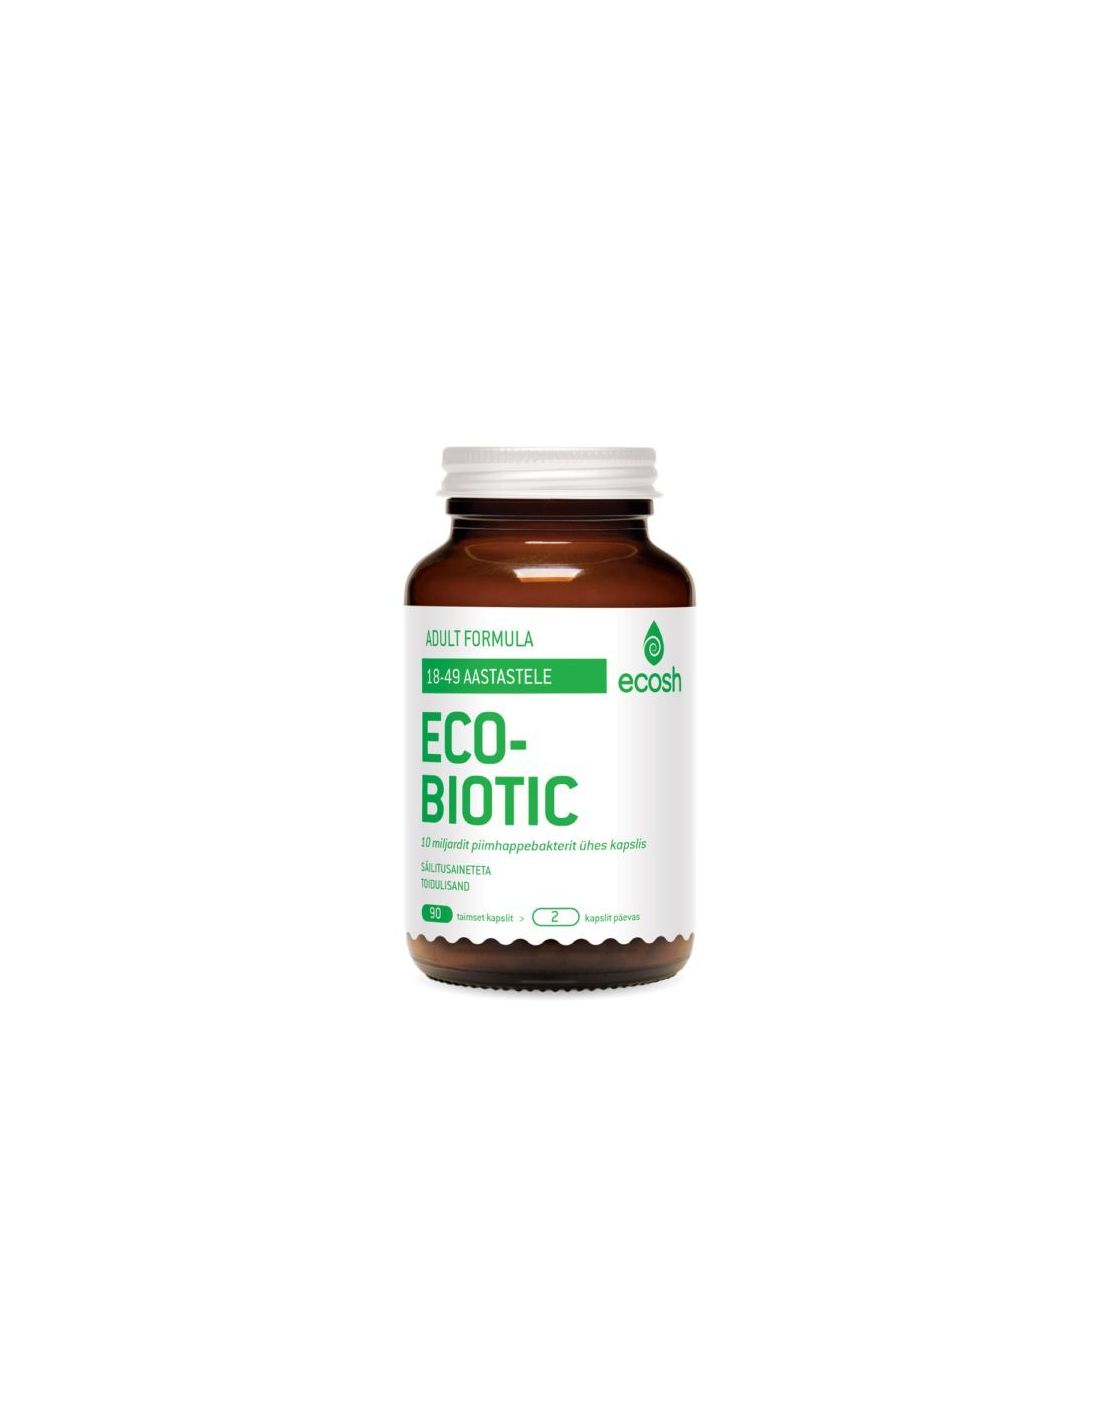 Ecobiotic Adult Probiootikumid